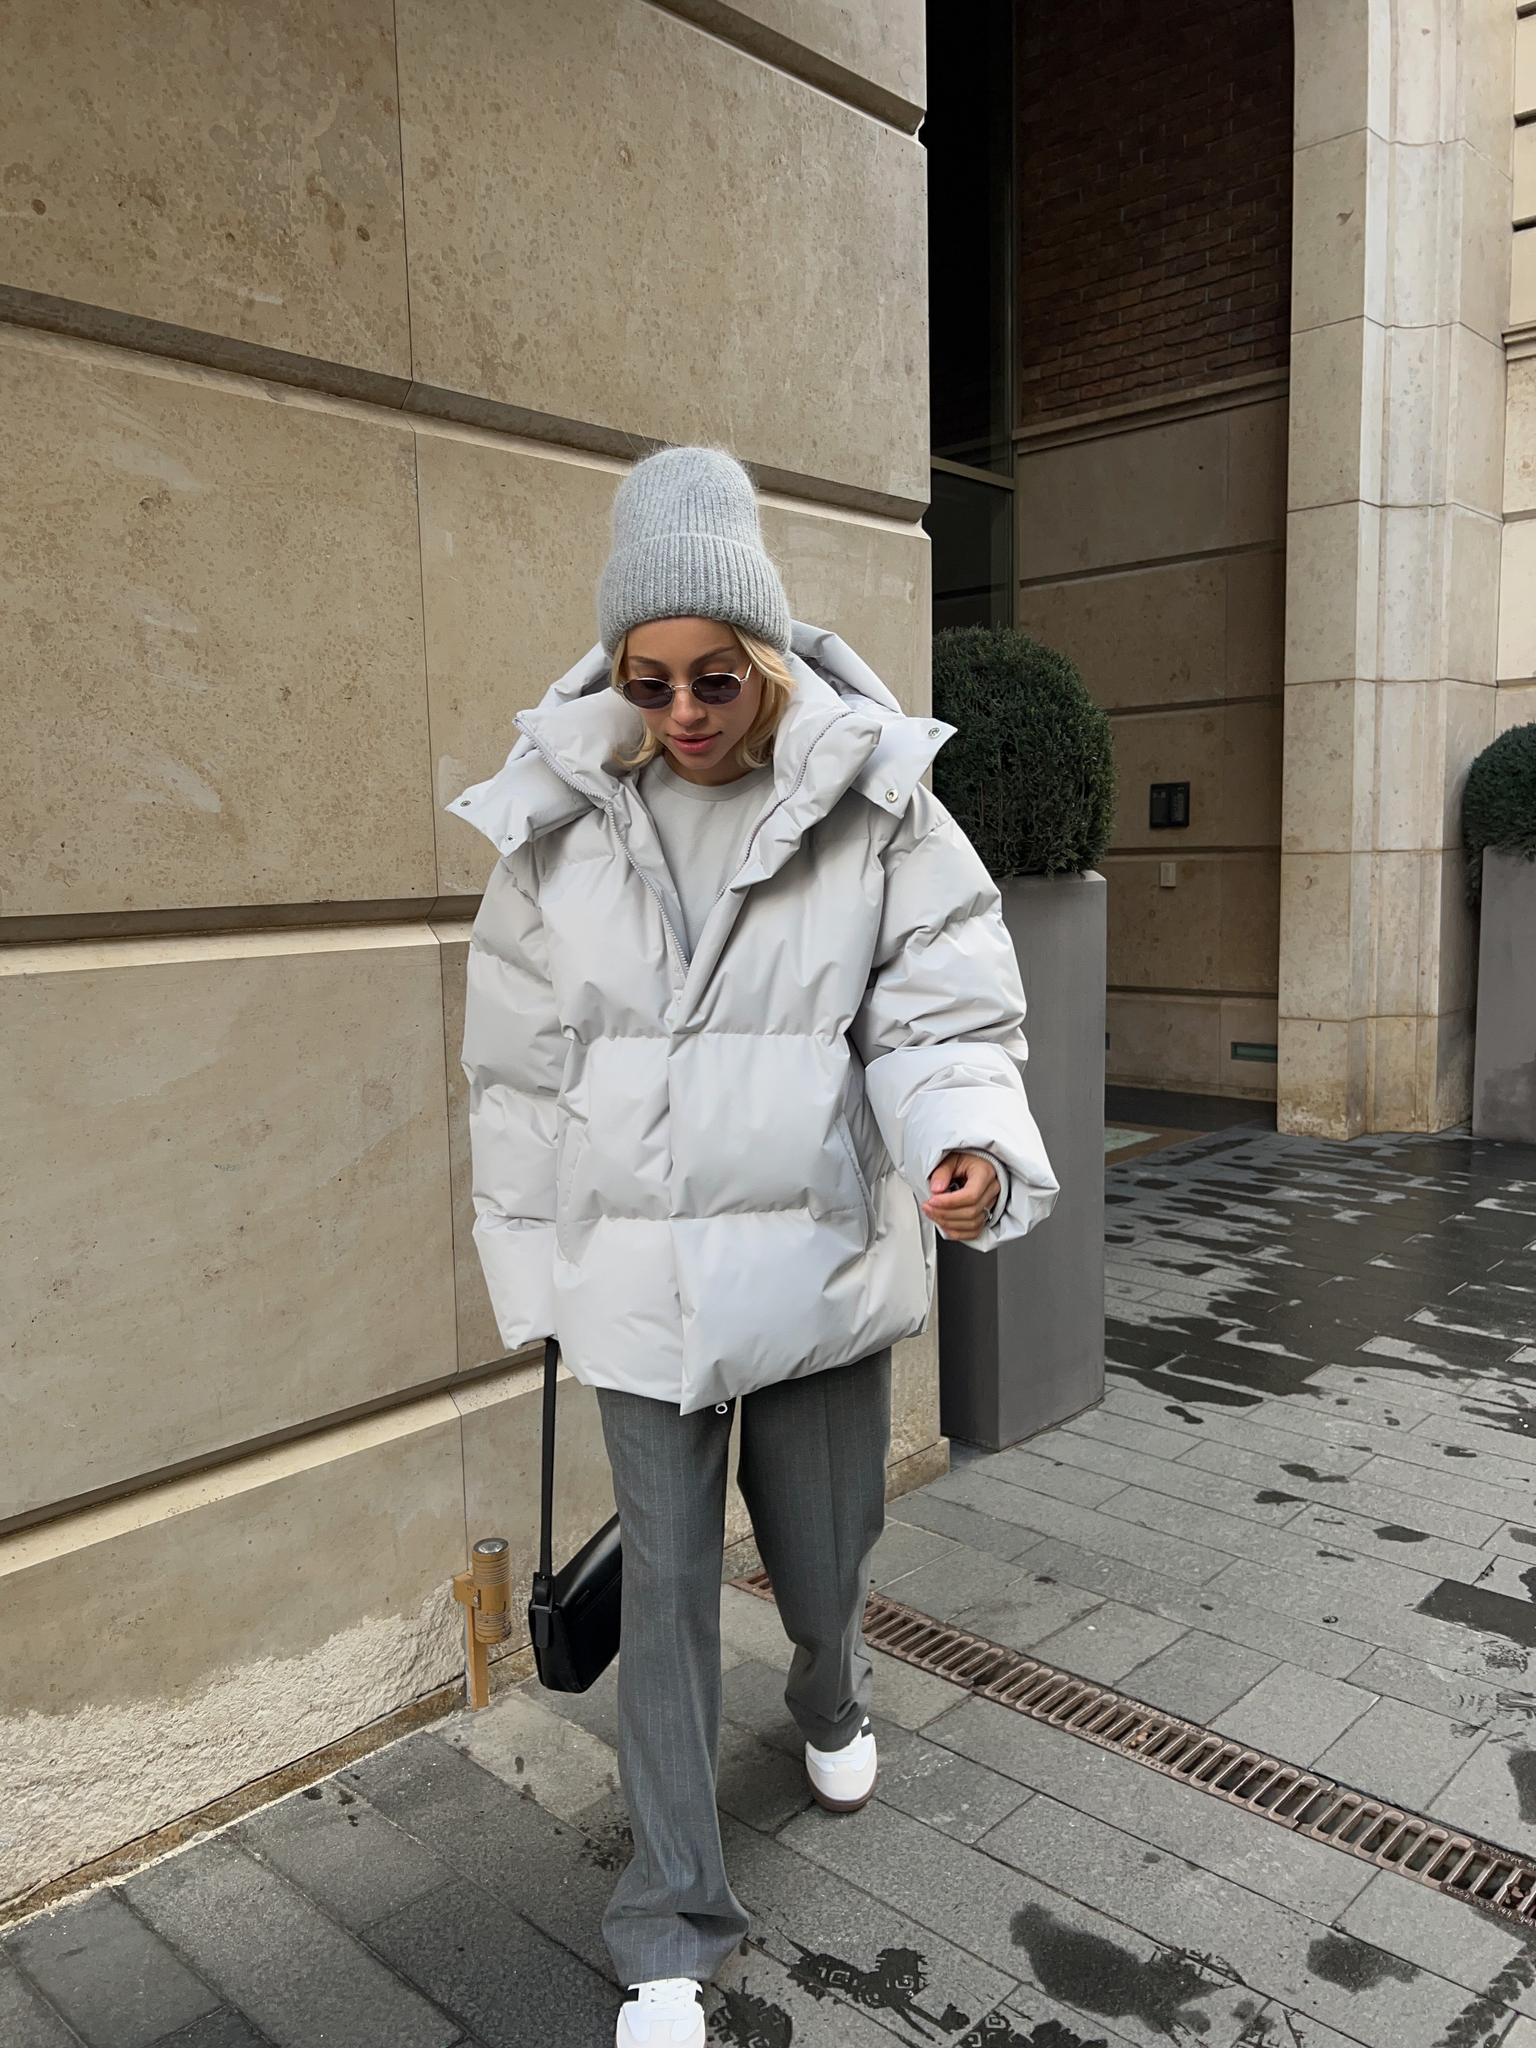 ВЕРХНЯЯ ОДЕЖДА \u003e Зимняя стёганная куртка с капюшоном пепельного цветакупить в интернет-магазине